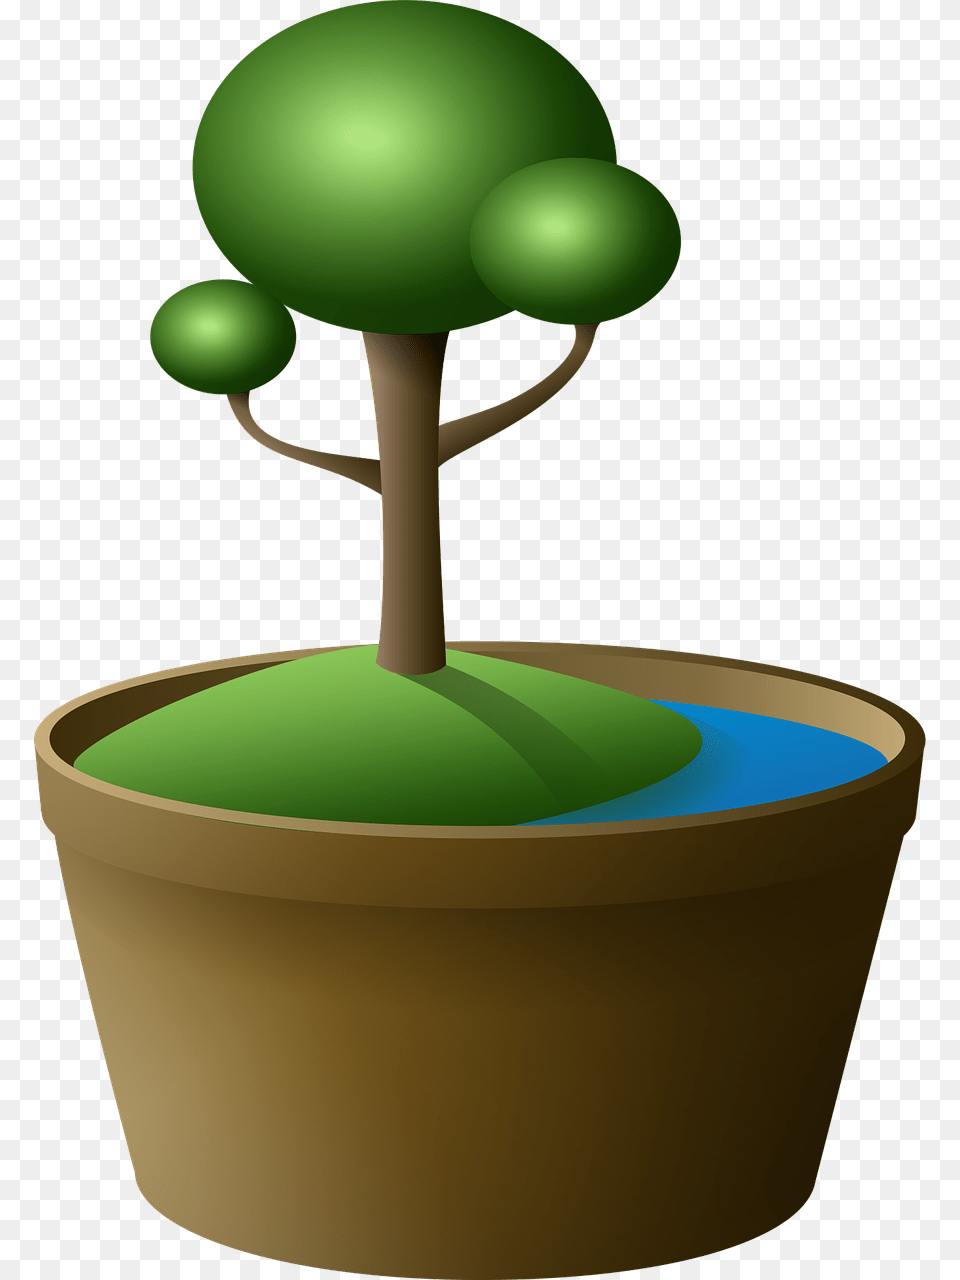 En Maceta Clipart Transparente, Green, Sphere, Plant, Potted Plant Free Transparent Png